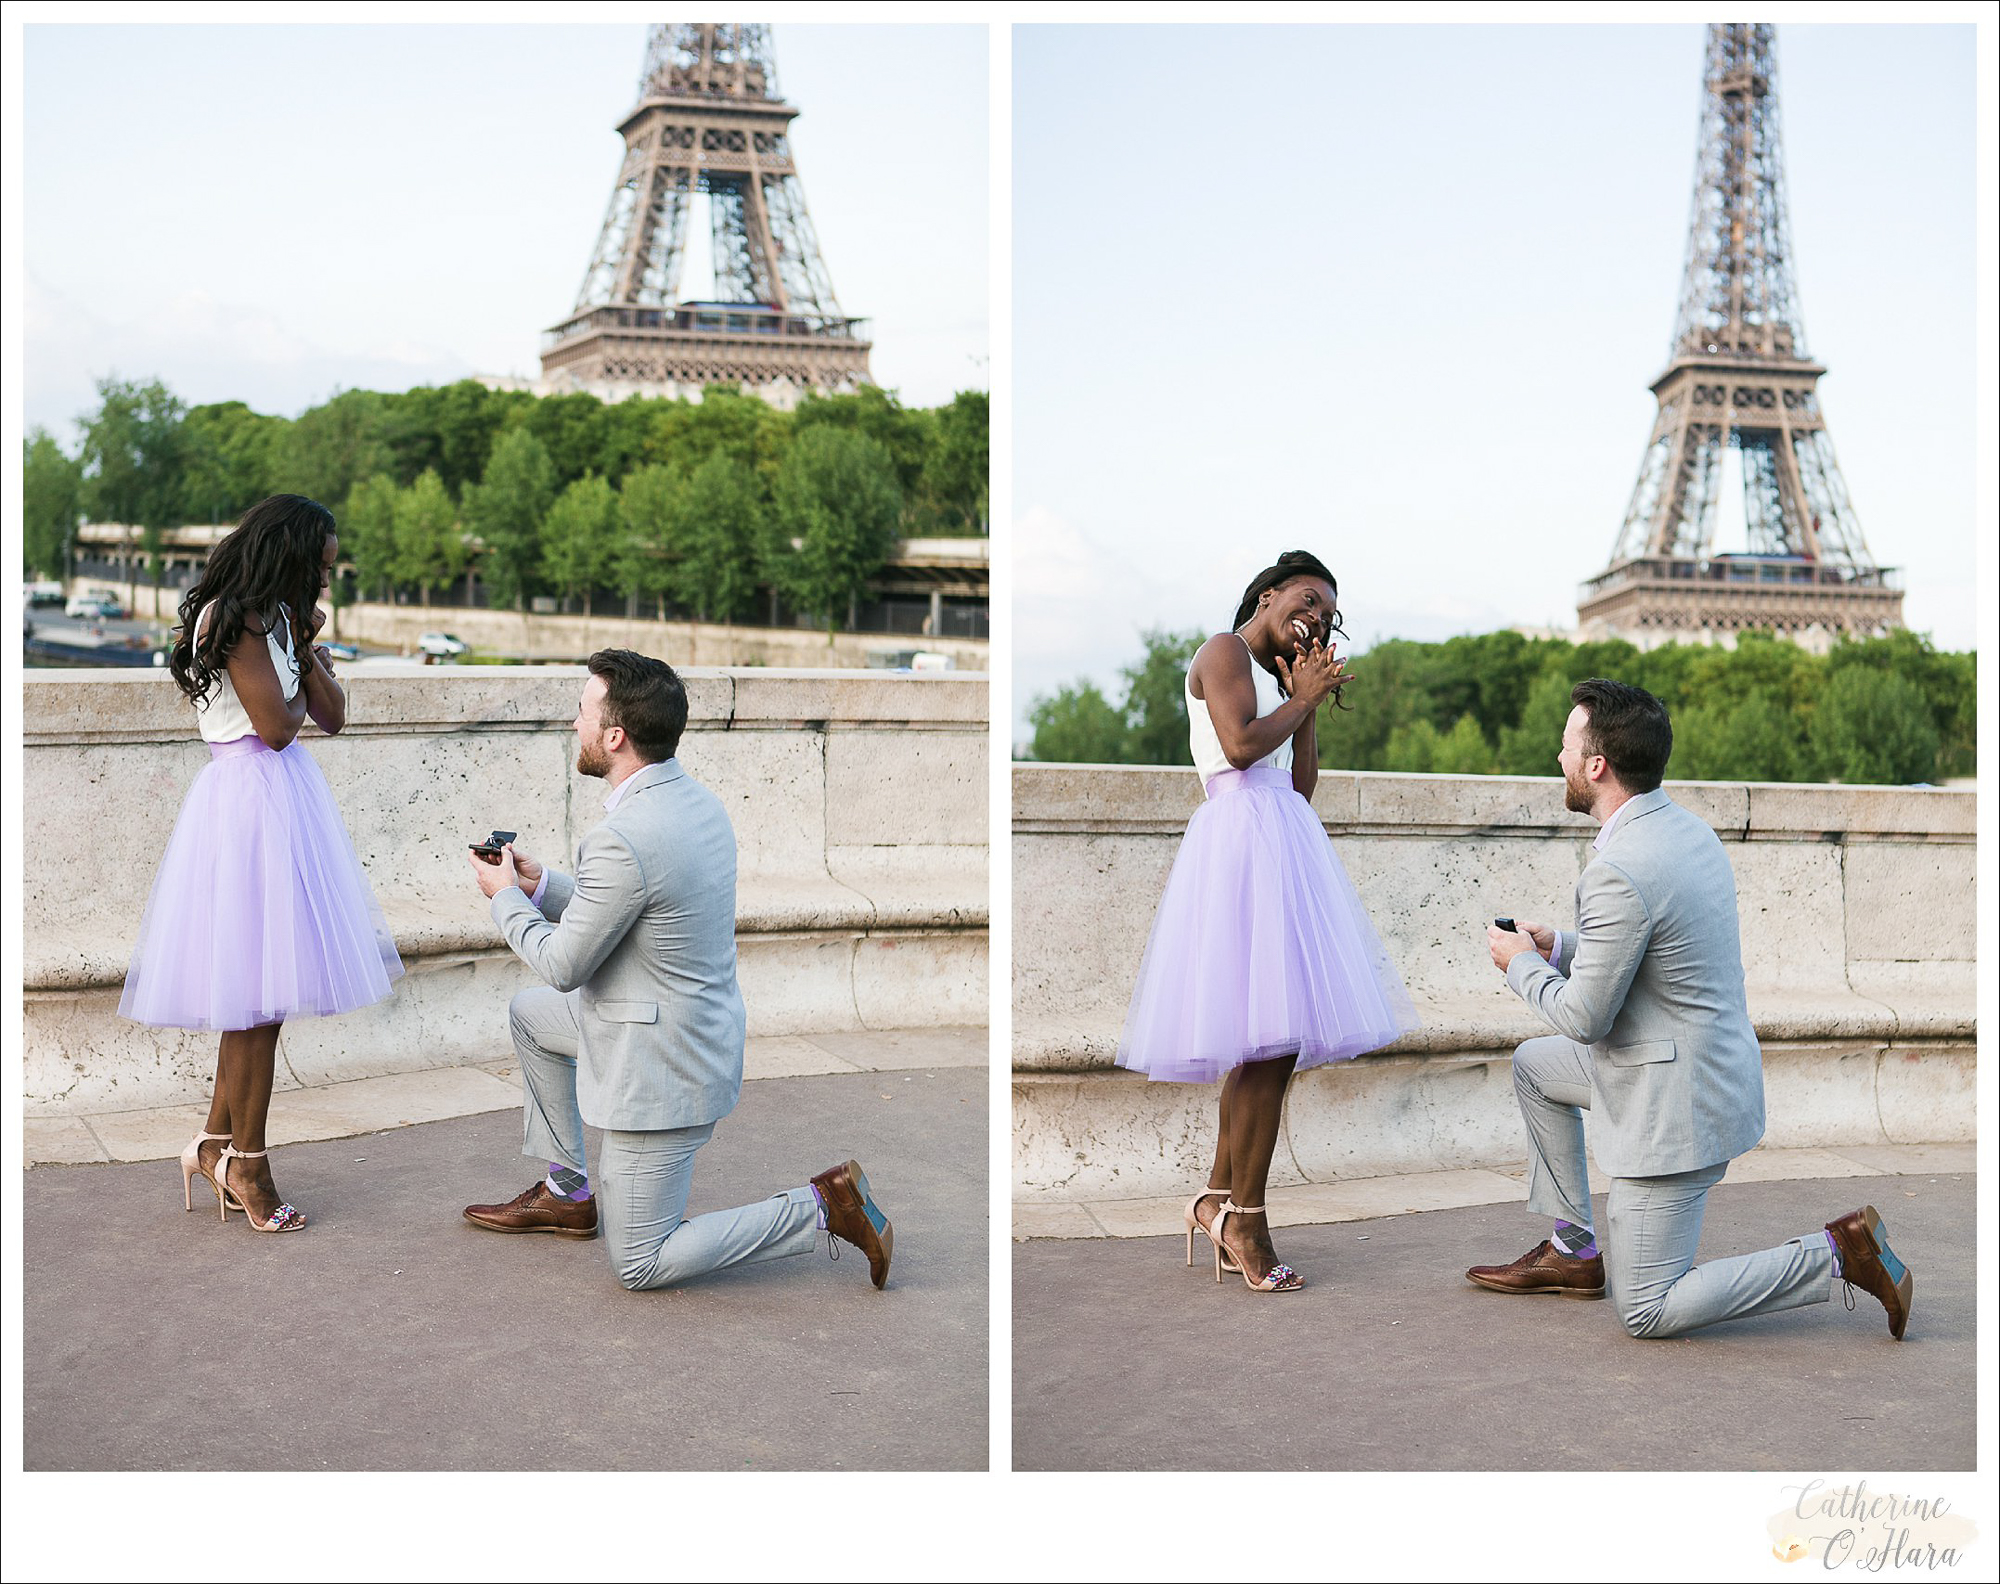 surprise proposal engagement photographer paris france-17.jpg